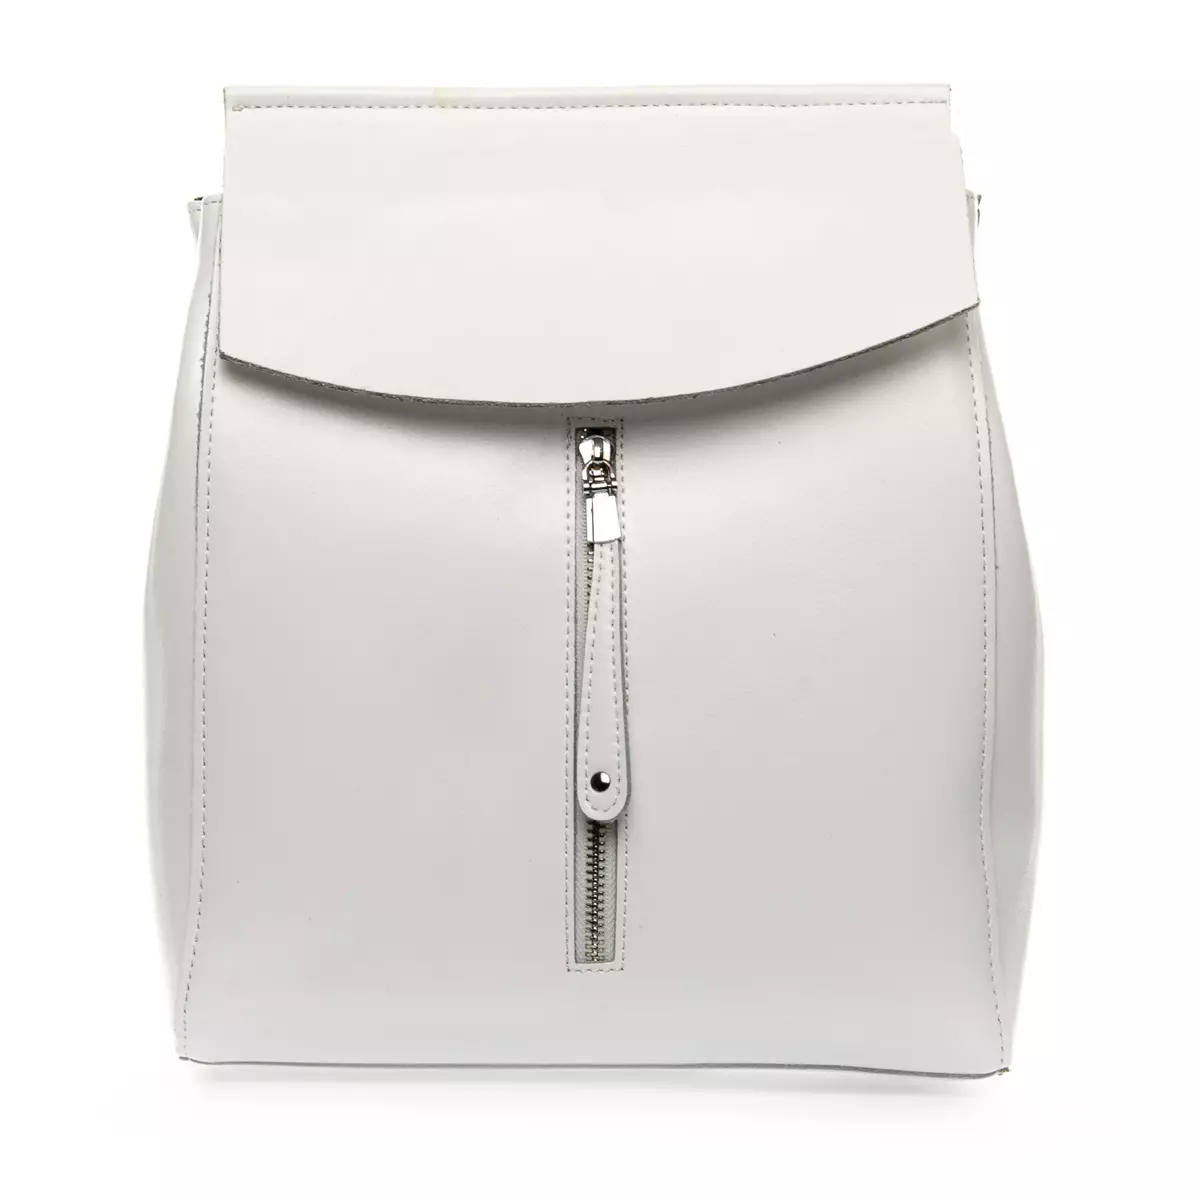 Backpacks bardhë: Çfarë duhet të veshin backpacks pak dhe të mëdha të bardha të grave? Çanta të bukura të shpinës për vajzat dhe modele të tjera me stil 2549_20